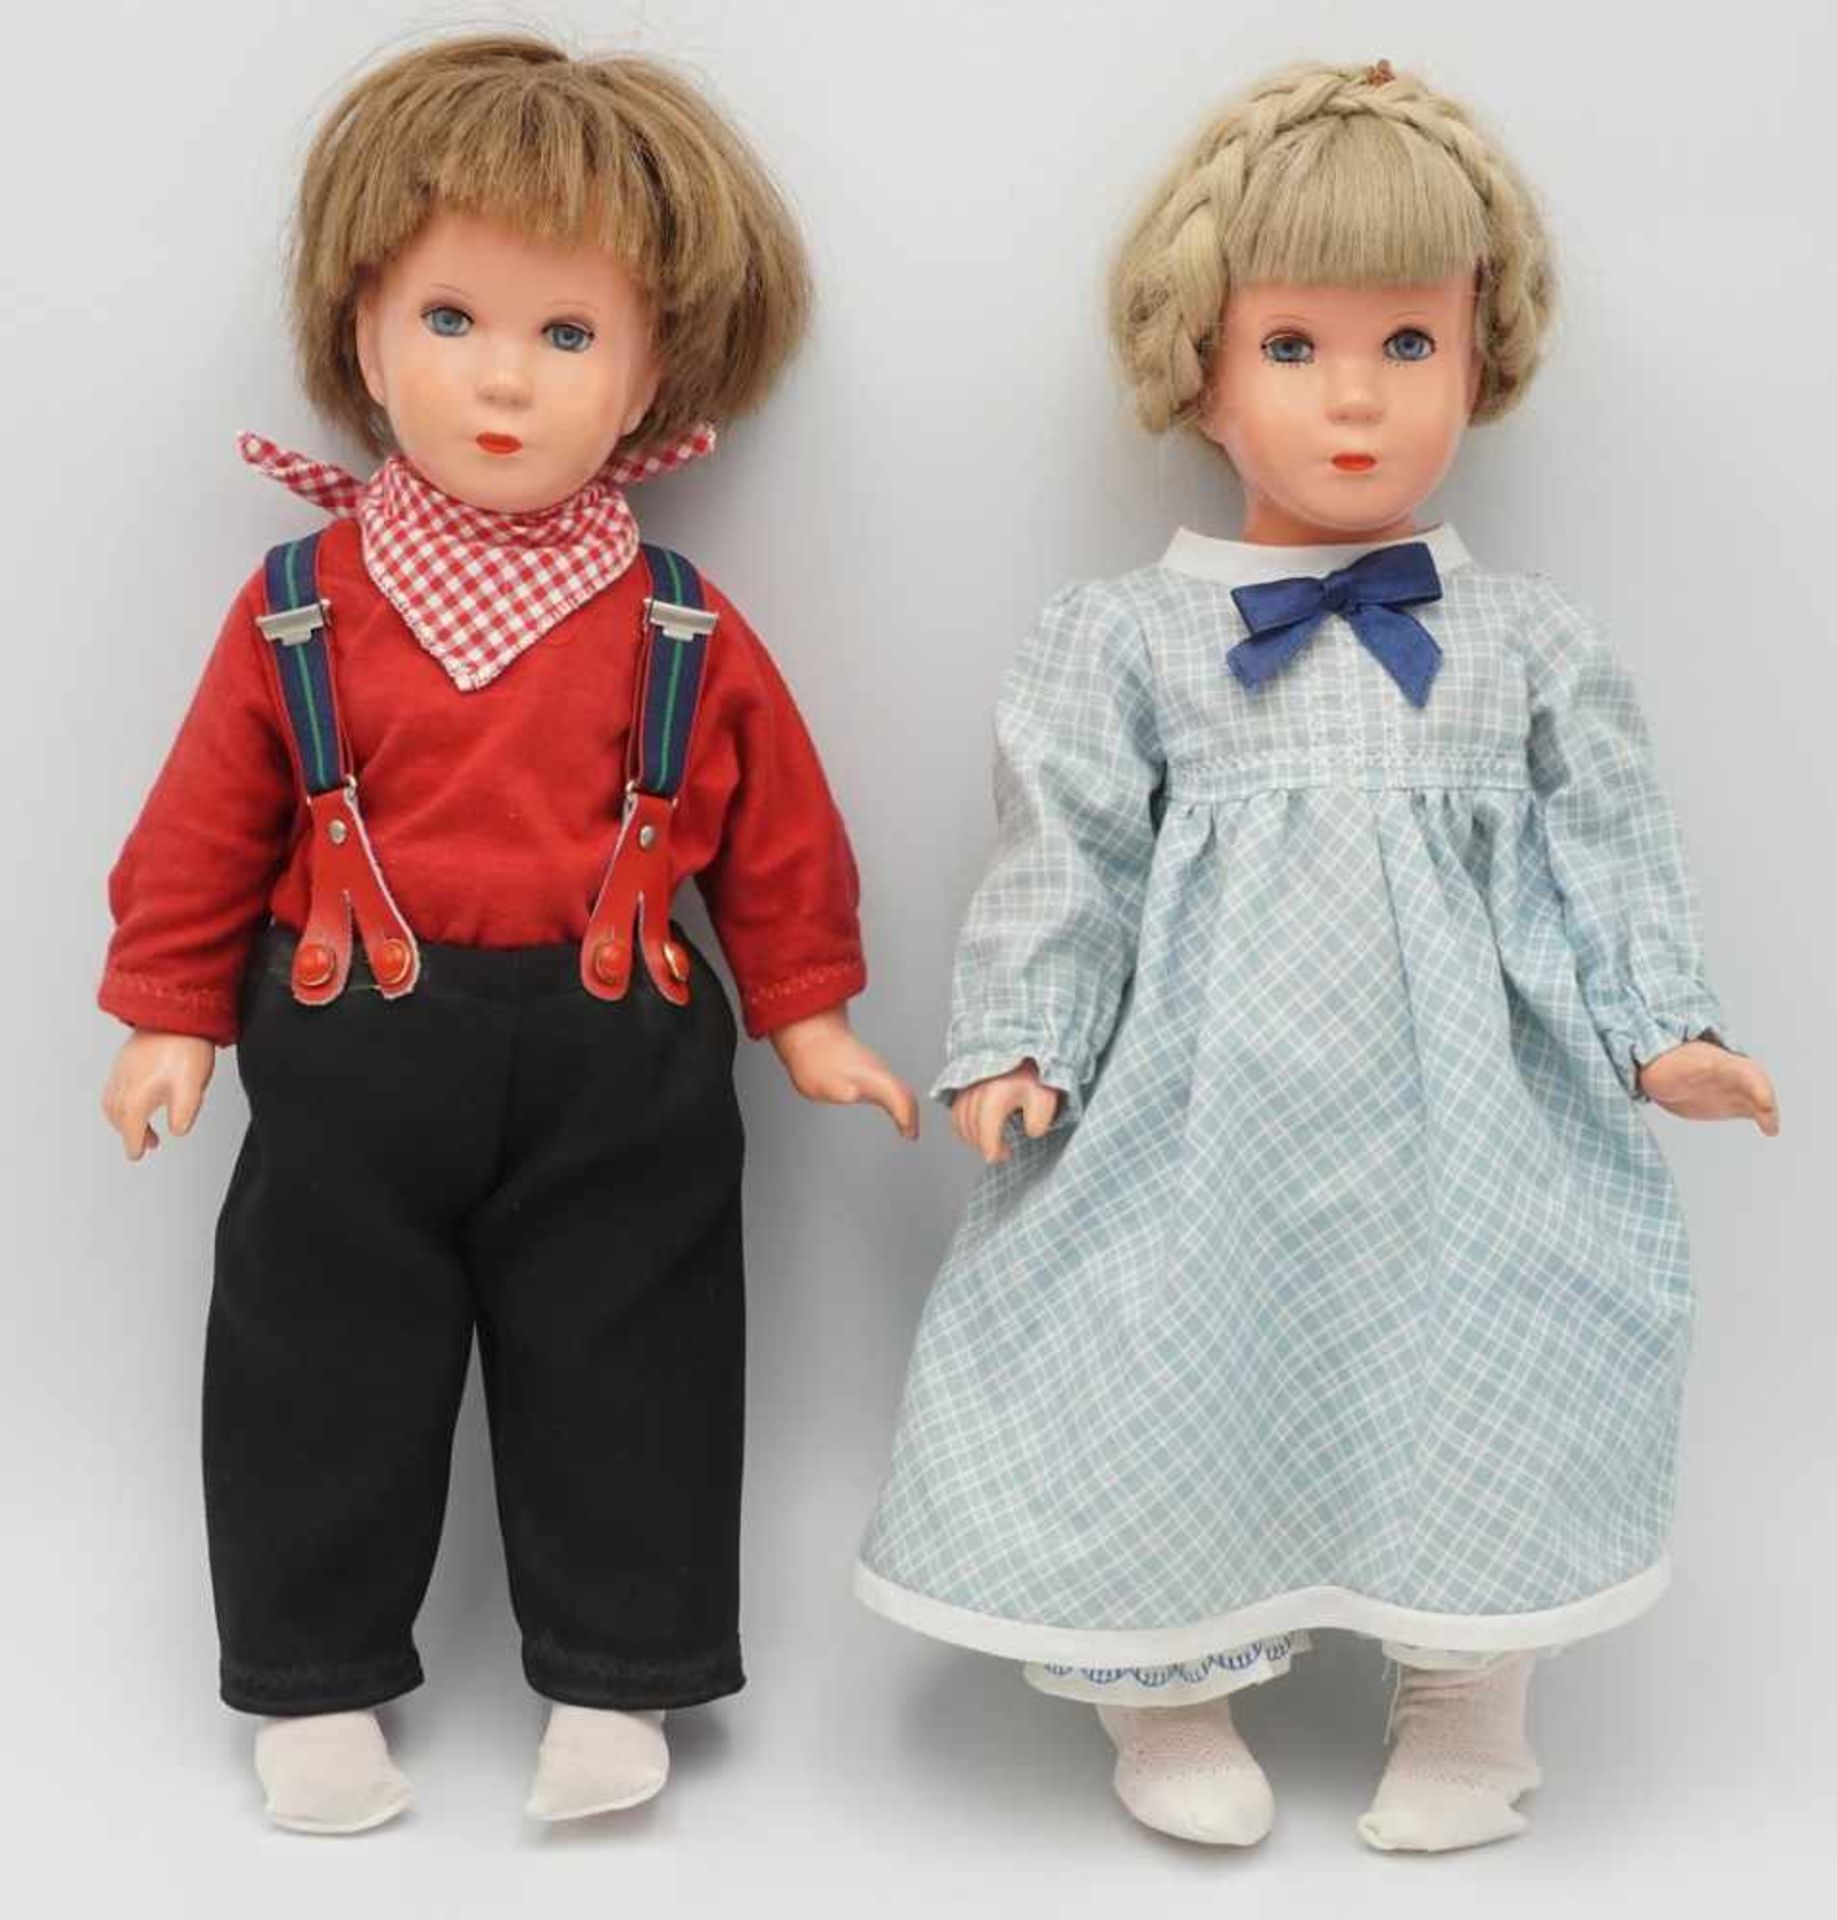 Zwei Schildkröt Puppen "Modell Käthe Kruse" T40, wohl um 1955